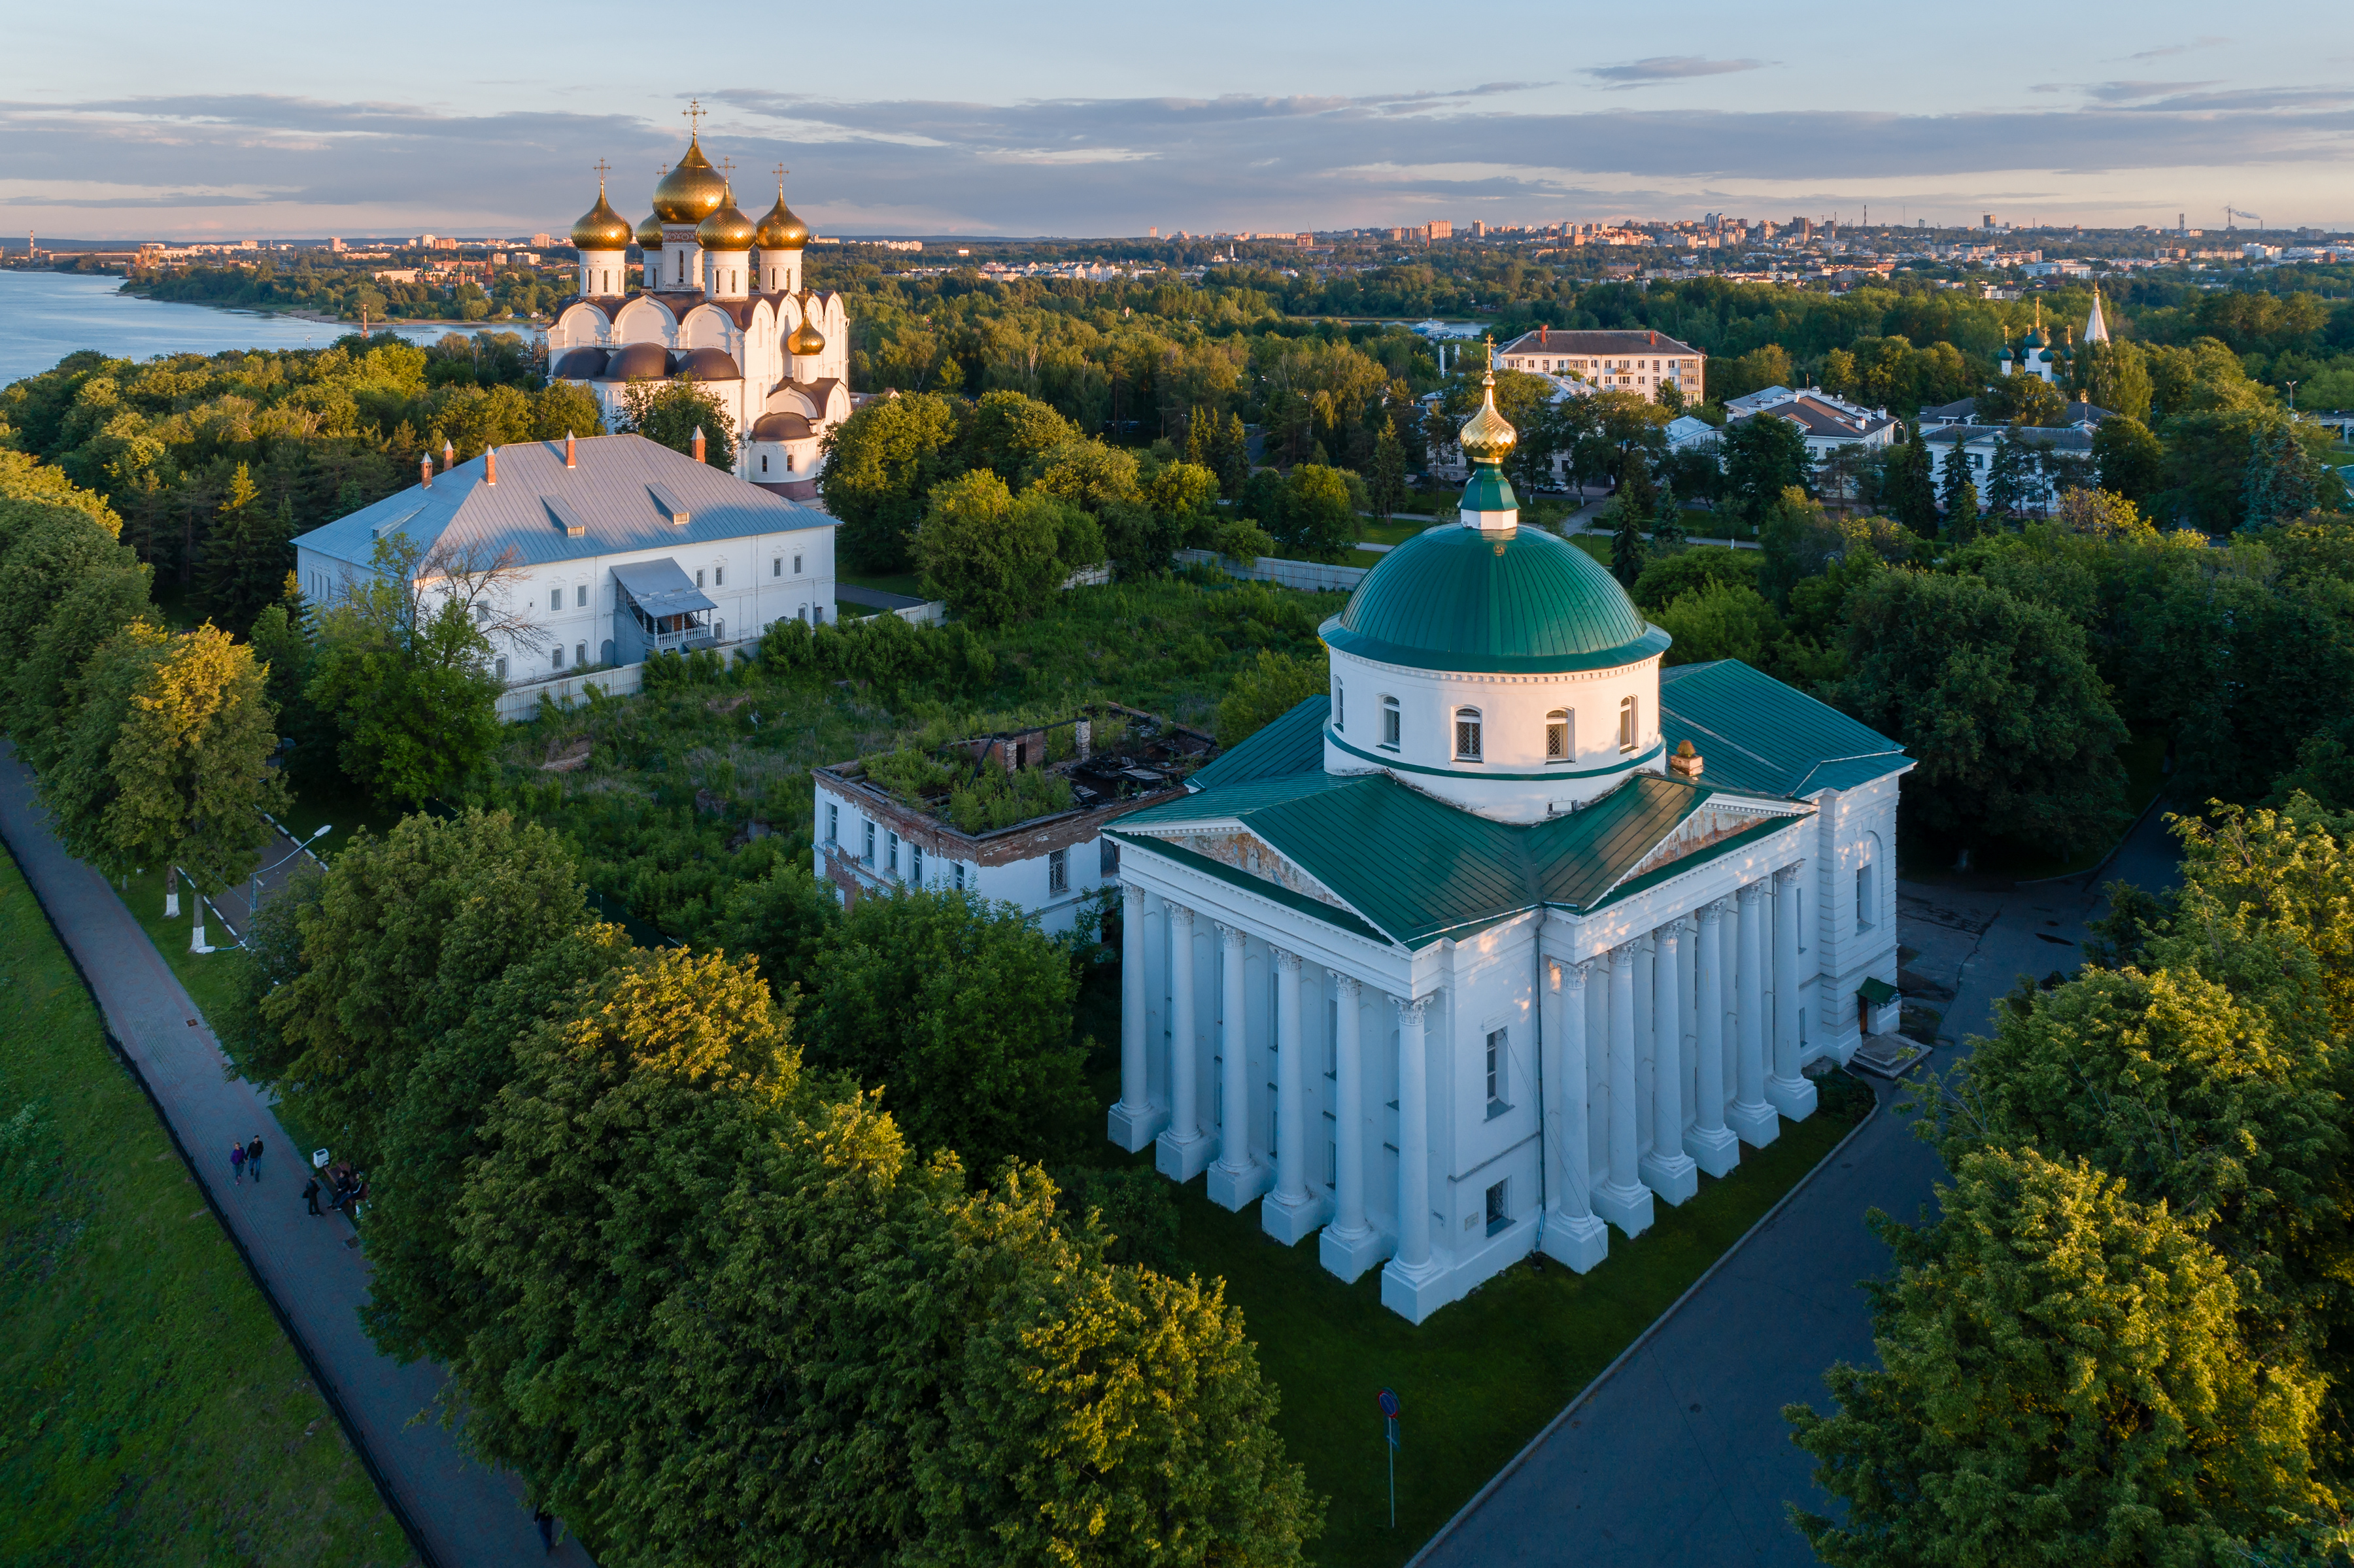 Ярославль вошел в топ-3 старинных городов, рекомендованных для посещения туристами